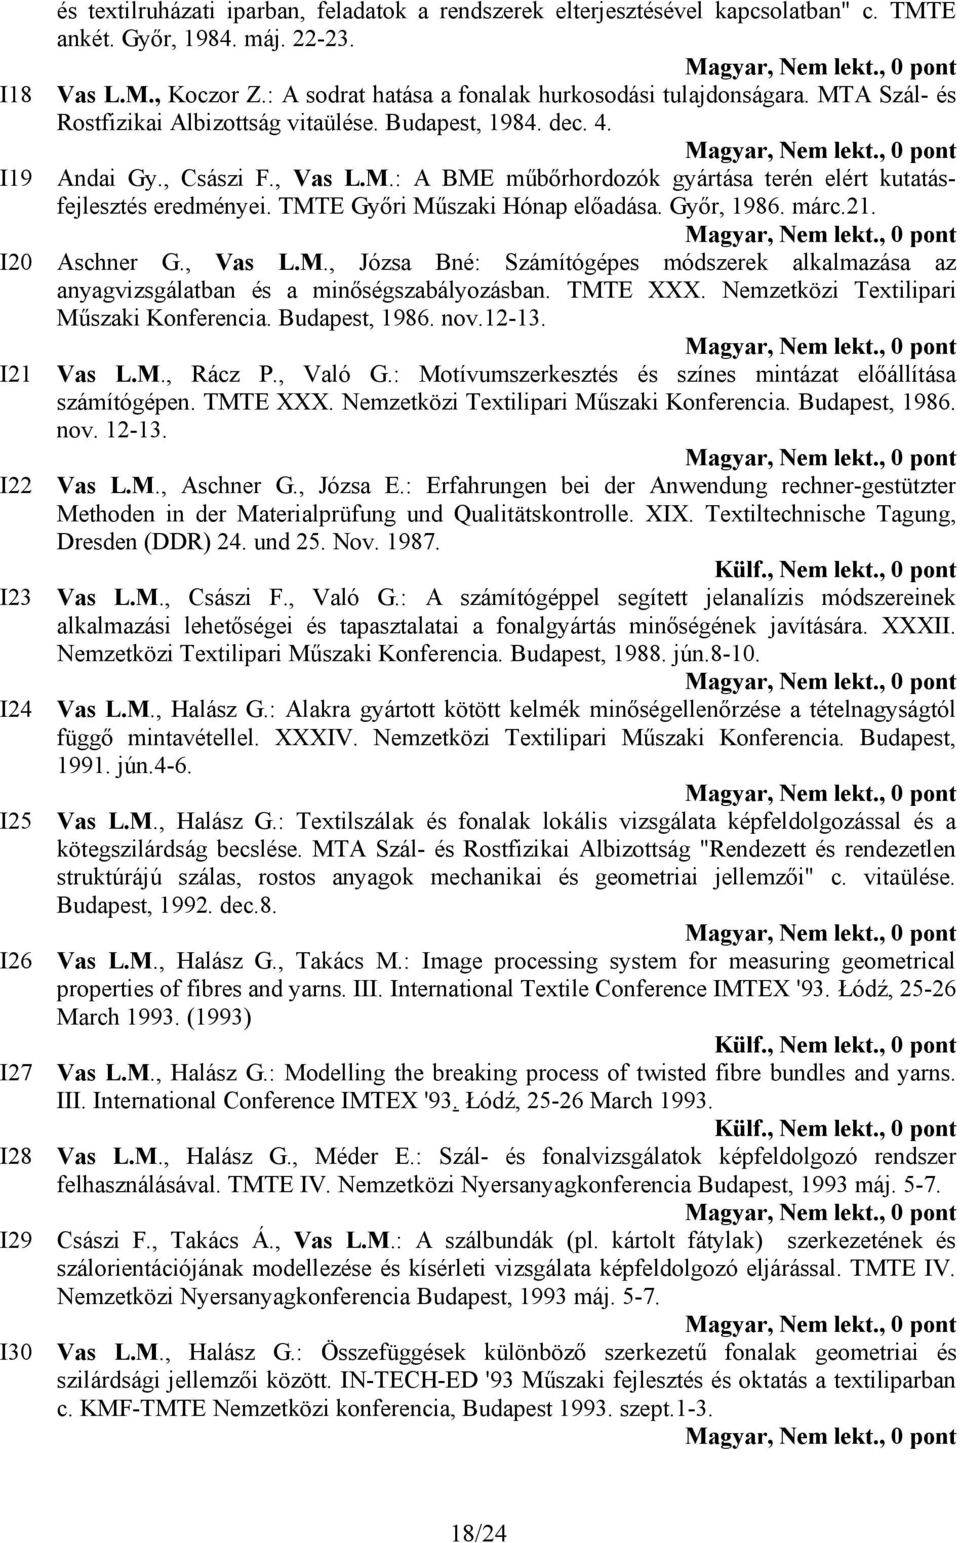 TMTE Győri Műszaki Hónap előadása. Győr, 1986. márc.21. Aschner G., Vas L.M., Józsa Bné: Számítógépes módszerek alkalmazása az anyagvizsgálatban és a minőségszabályozásban. TMTE XXX.